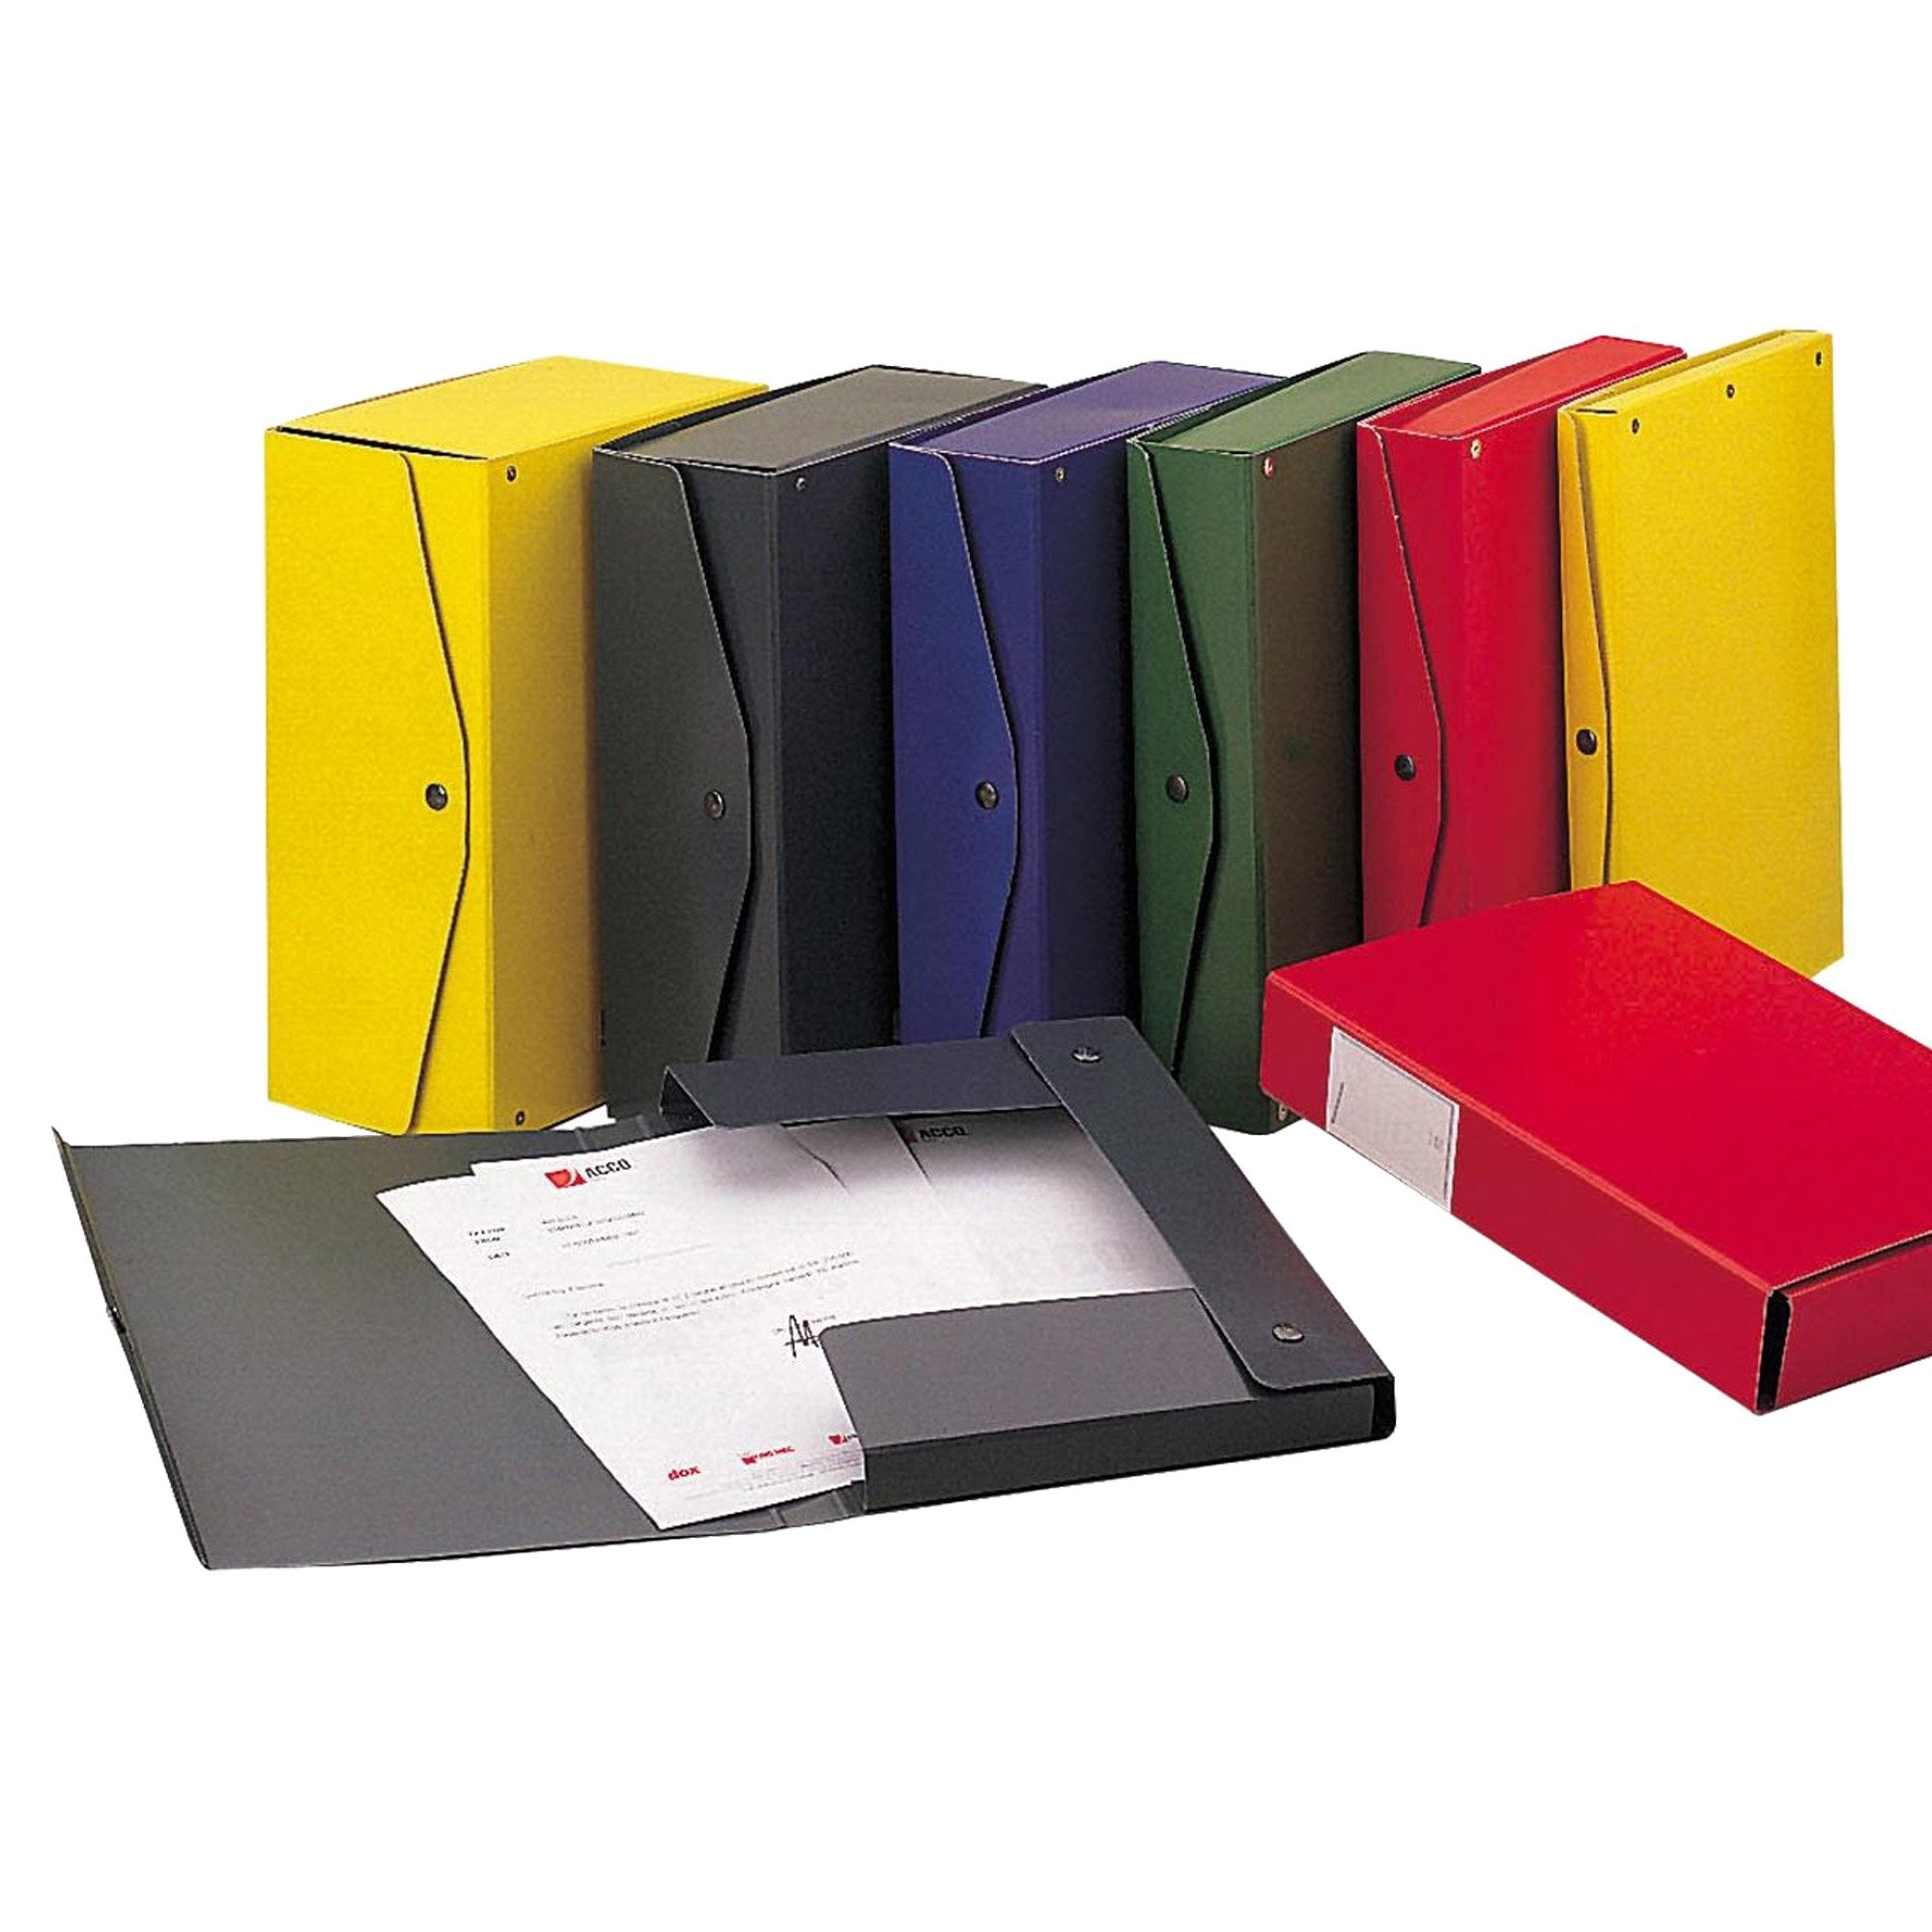 king-mec-scatola-archivio-project-12-giallo-25x35cm-dorso-12cm